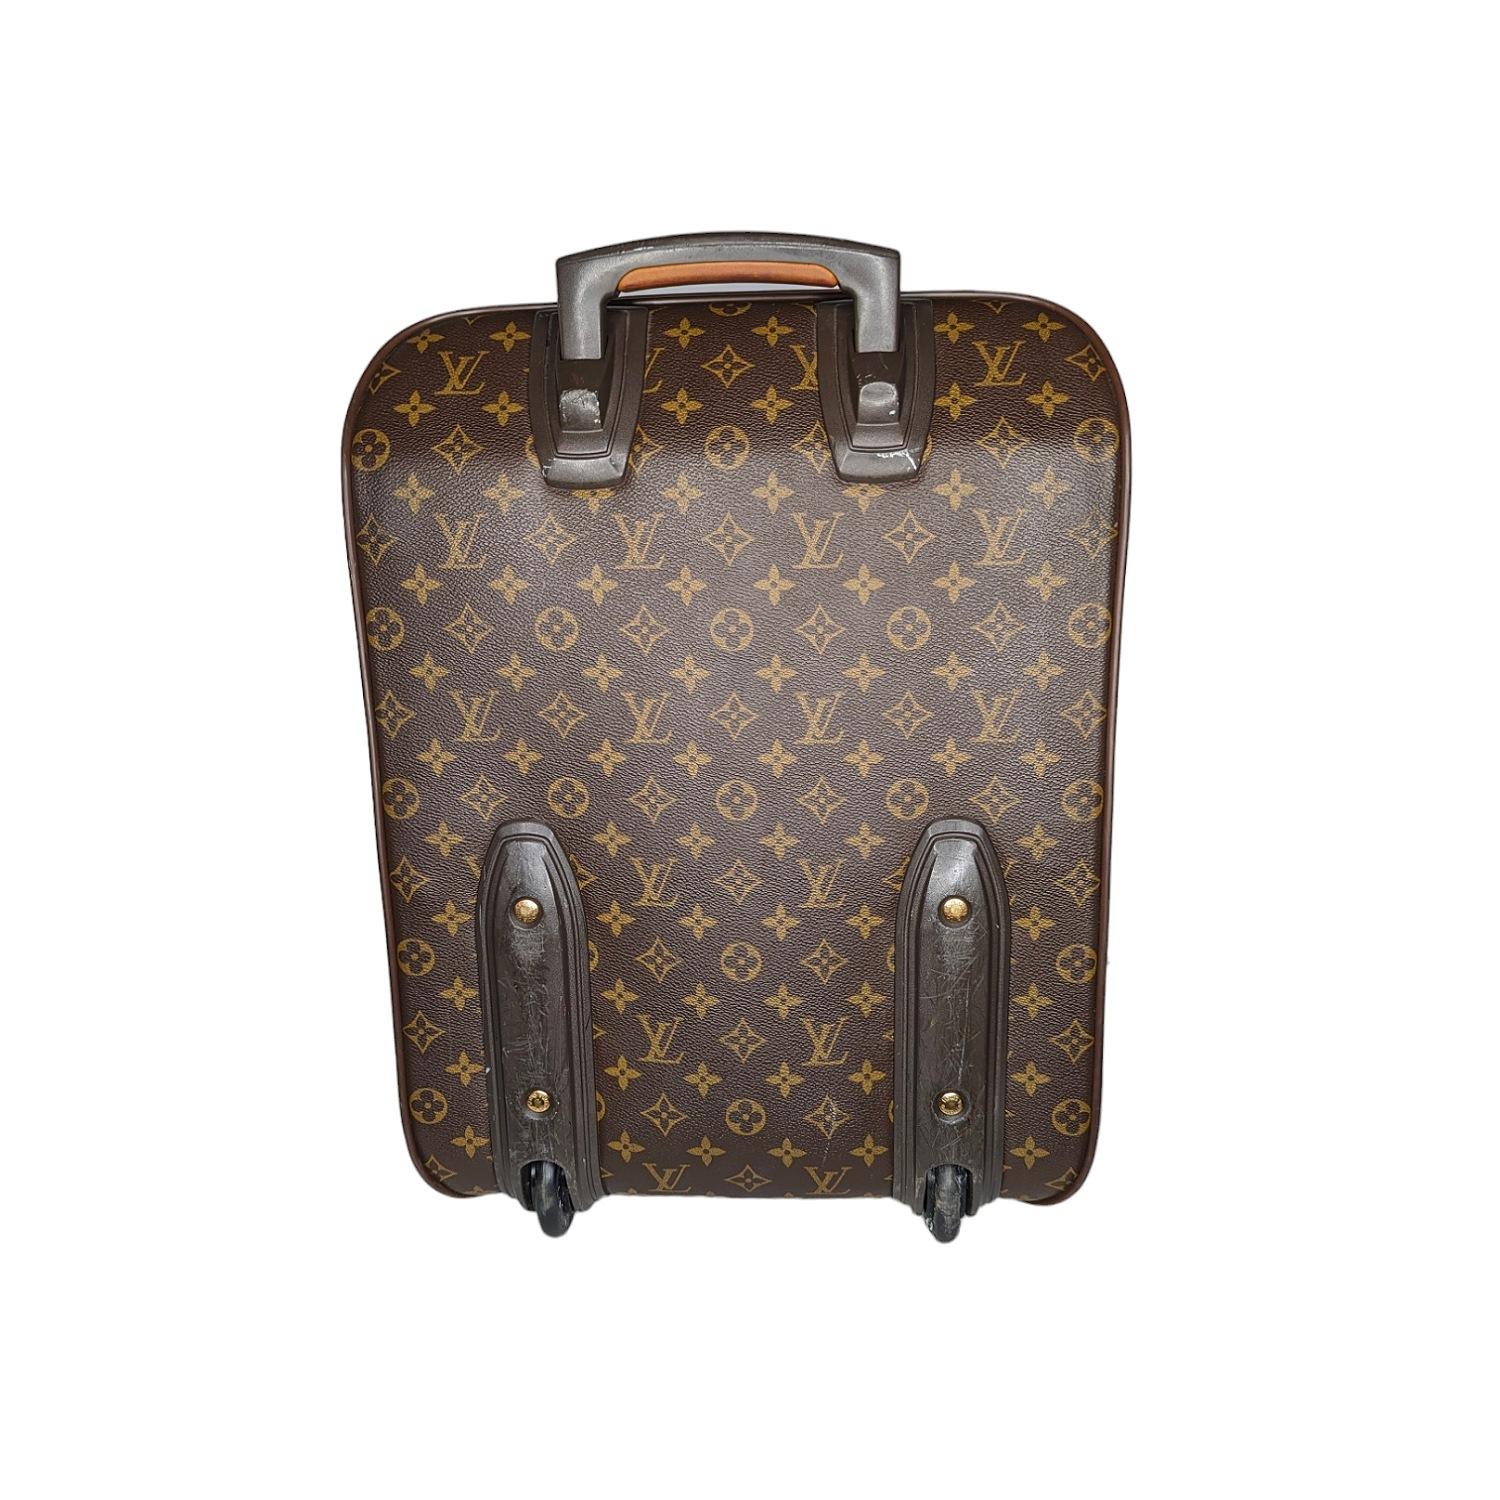 Dieser stilvolle Koffer ist aus klassischem, mit Monogrammen beschichtetem Louis Vuitton Canvas gefertigt. Die Tasche verfügt über eine tiefe Vordertasche mit einem versteckten Reißverschlussfach, Vachetta-Rindslederbesatz, einen verstärkten oberen